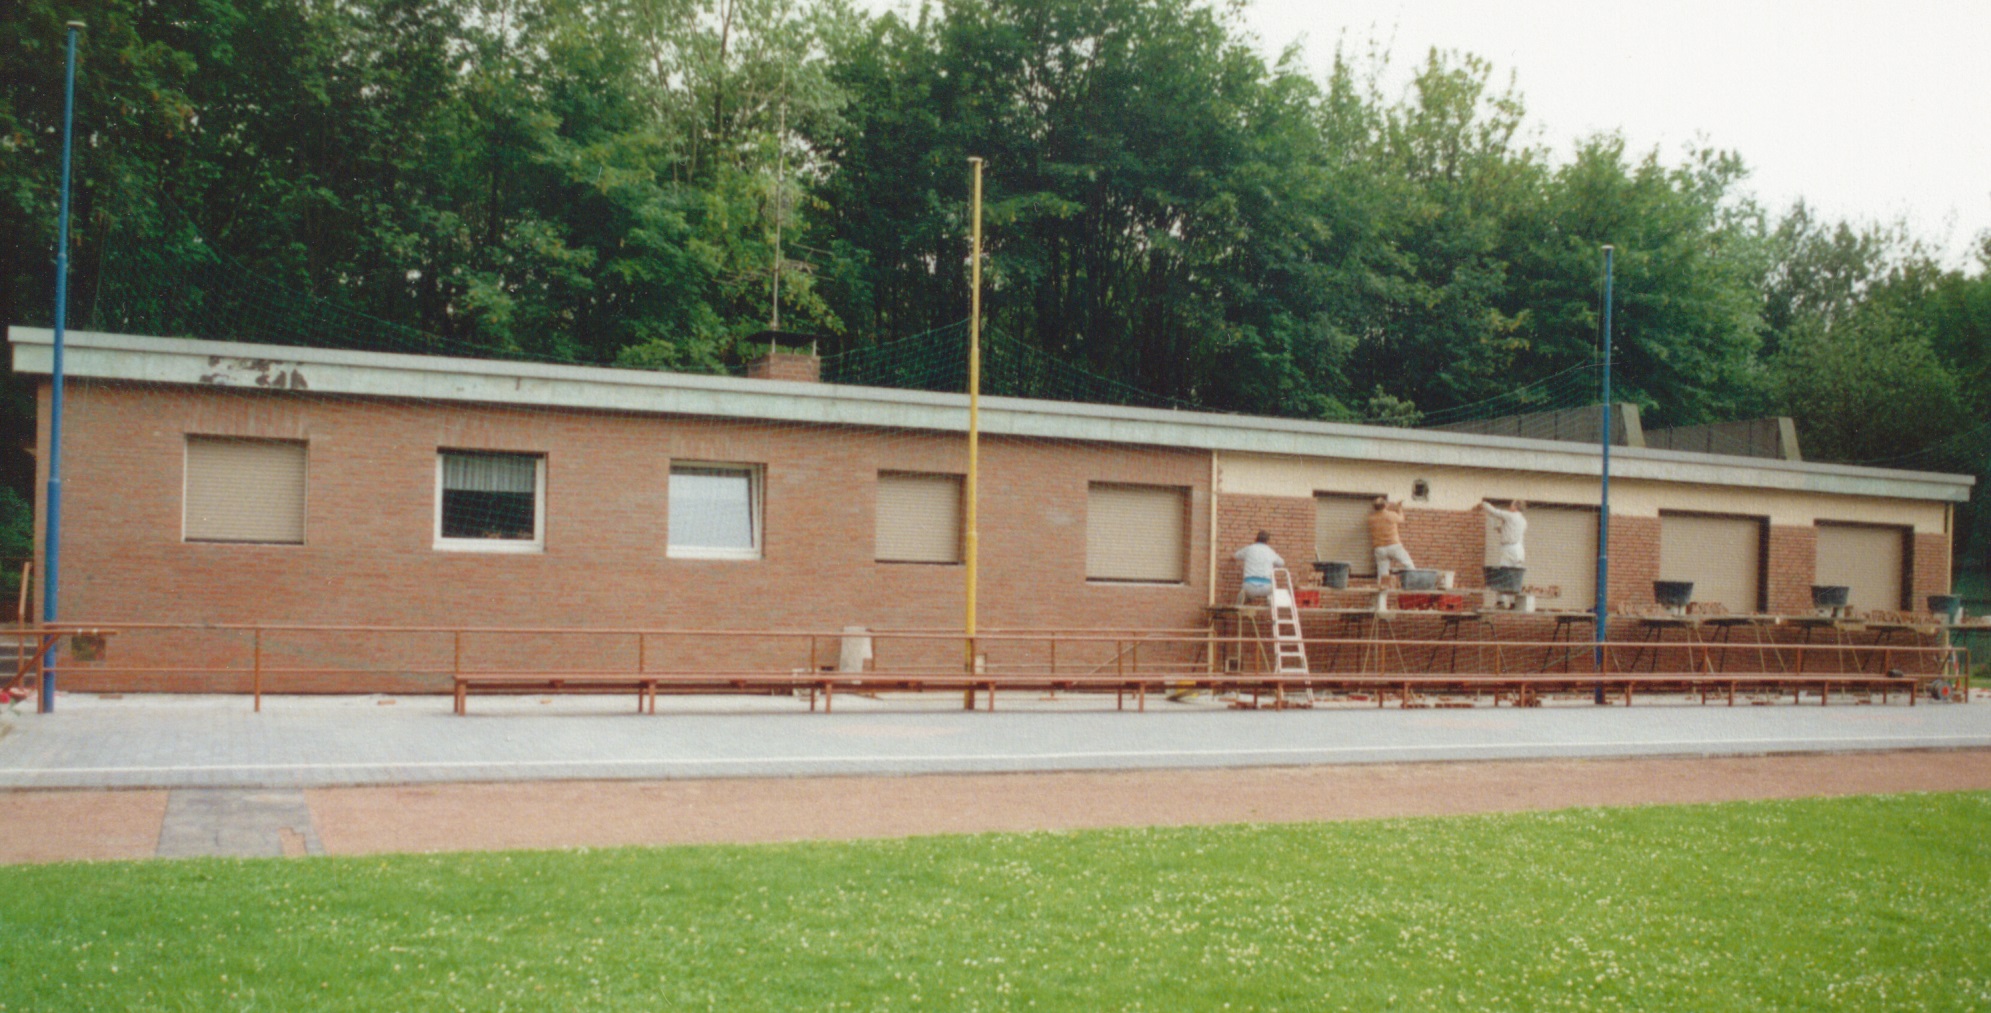 geschichte-klubhaus-verklinkerung-1990